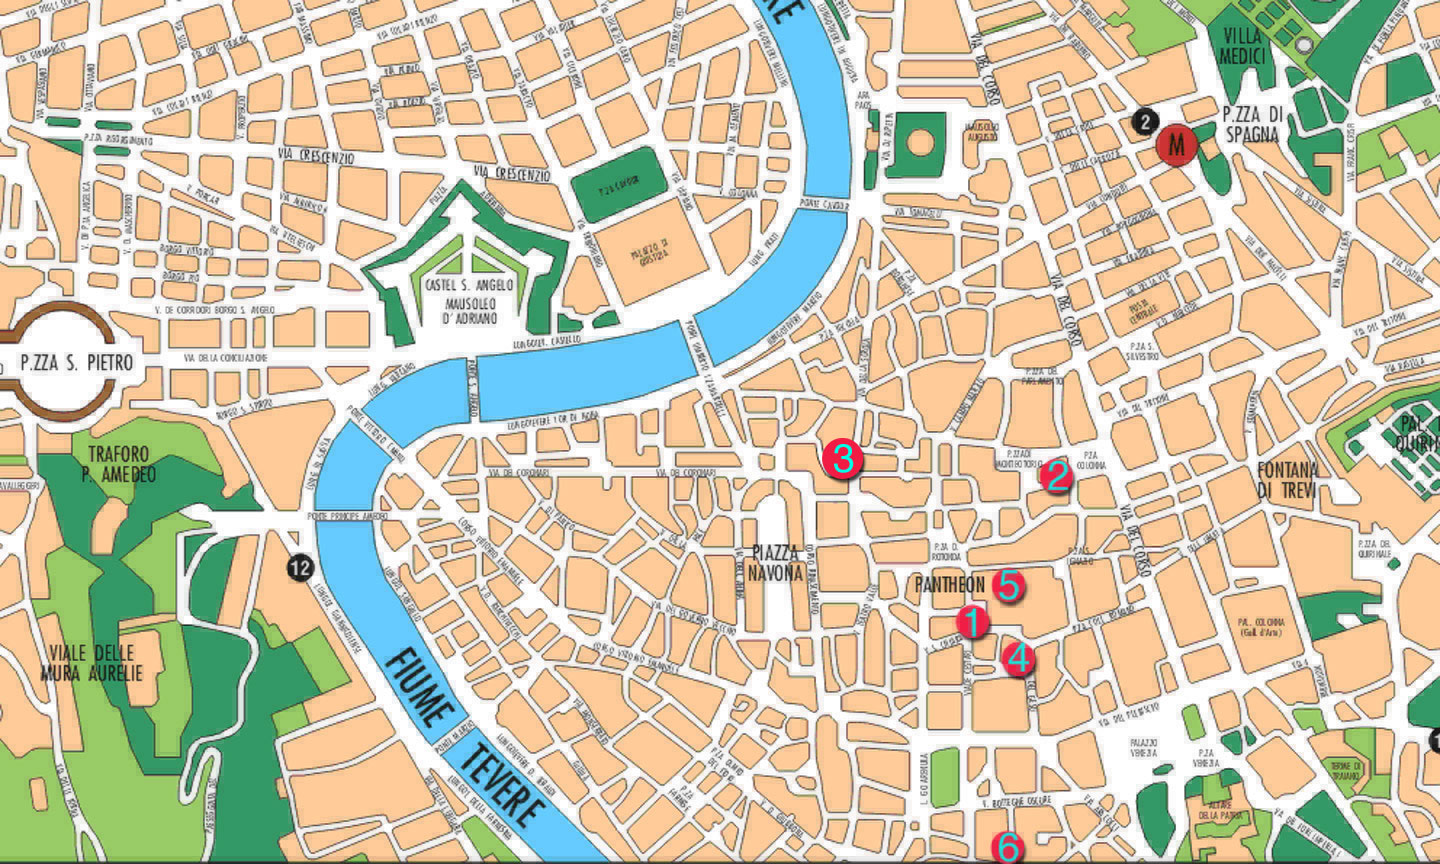 city centre carte du roma